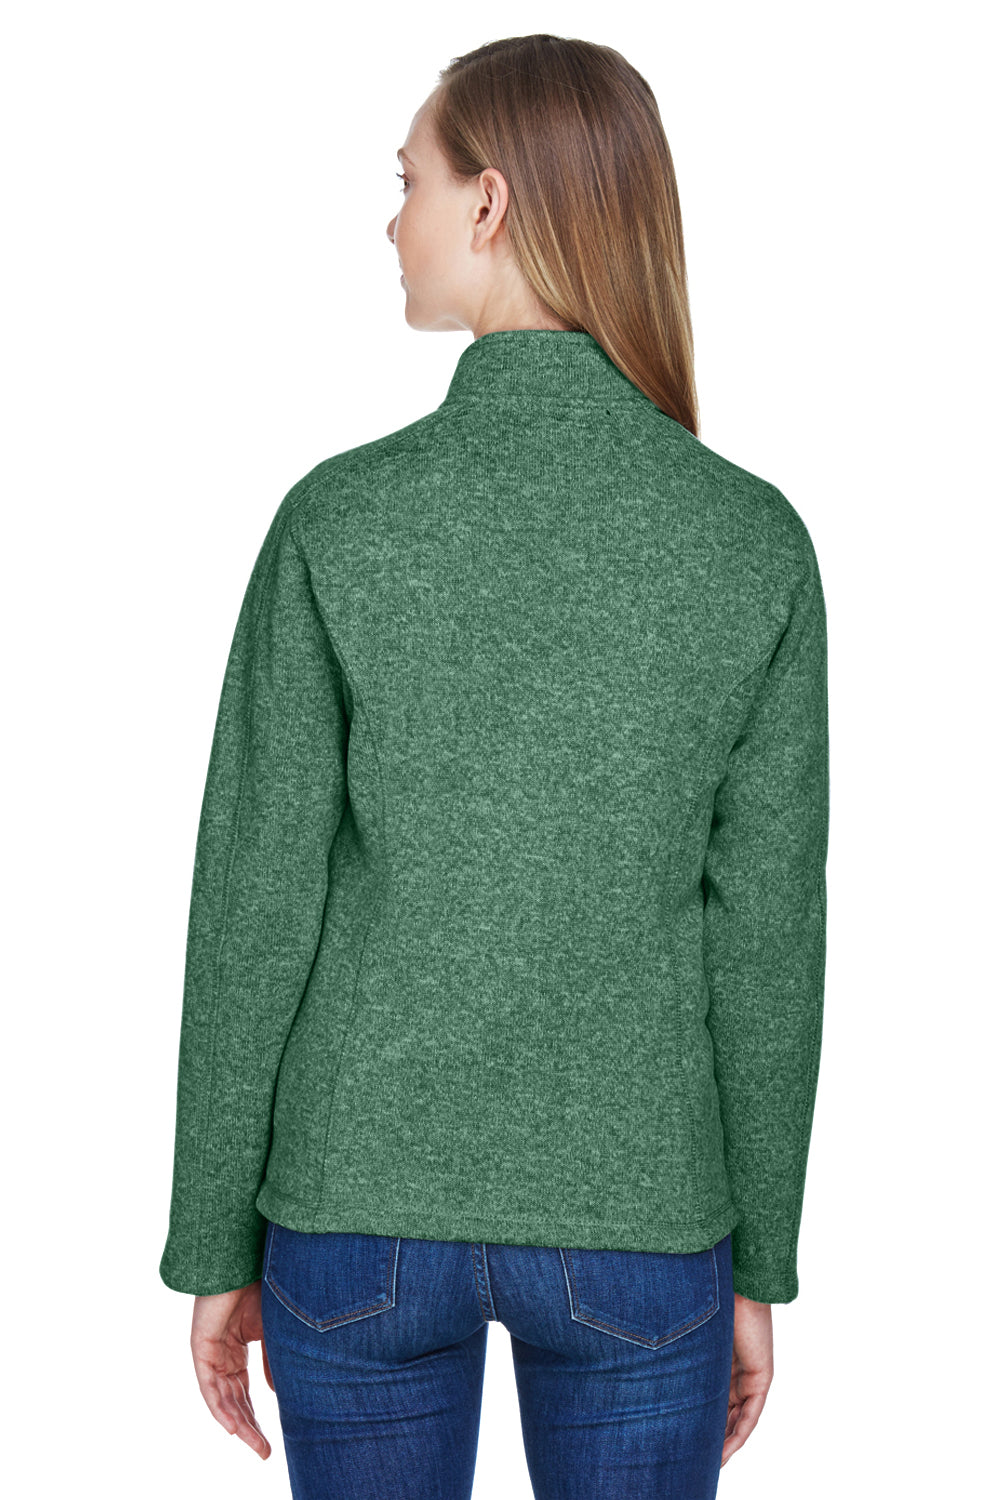 Devon & Jones DG793W Womens Bristol Full Zip Sweater Fleece Jacket Forest Green Back